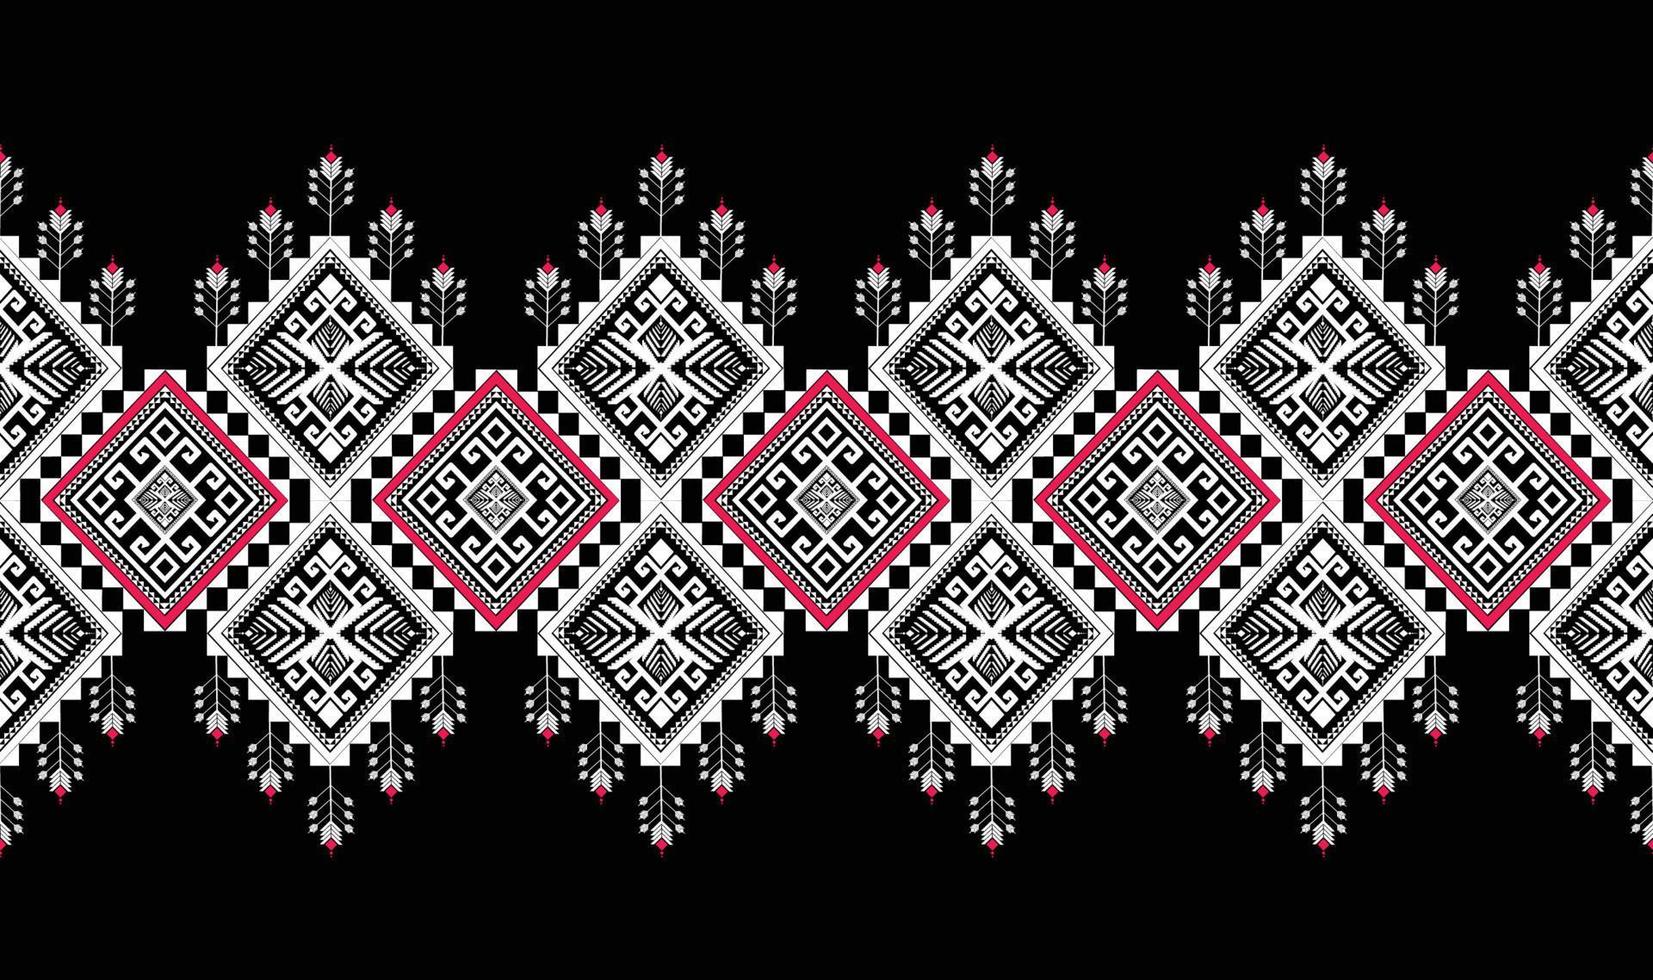 abstraktes ethnisches geometrisches ikat-muster. orientalische afroamerikanische mexikanische aztekische Motivtextilien und böhmische Mustervektorelemente. entworfen für hintergrund, tapeten, druck .vektor-ikat-muster. vektor